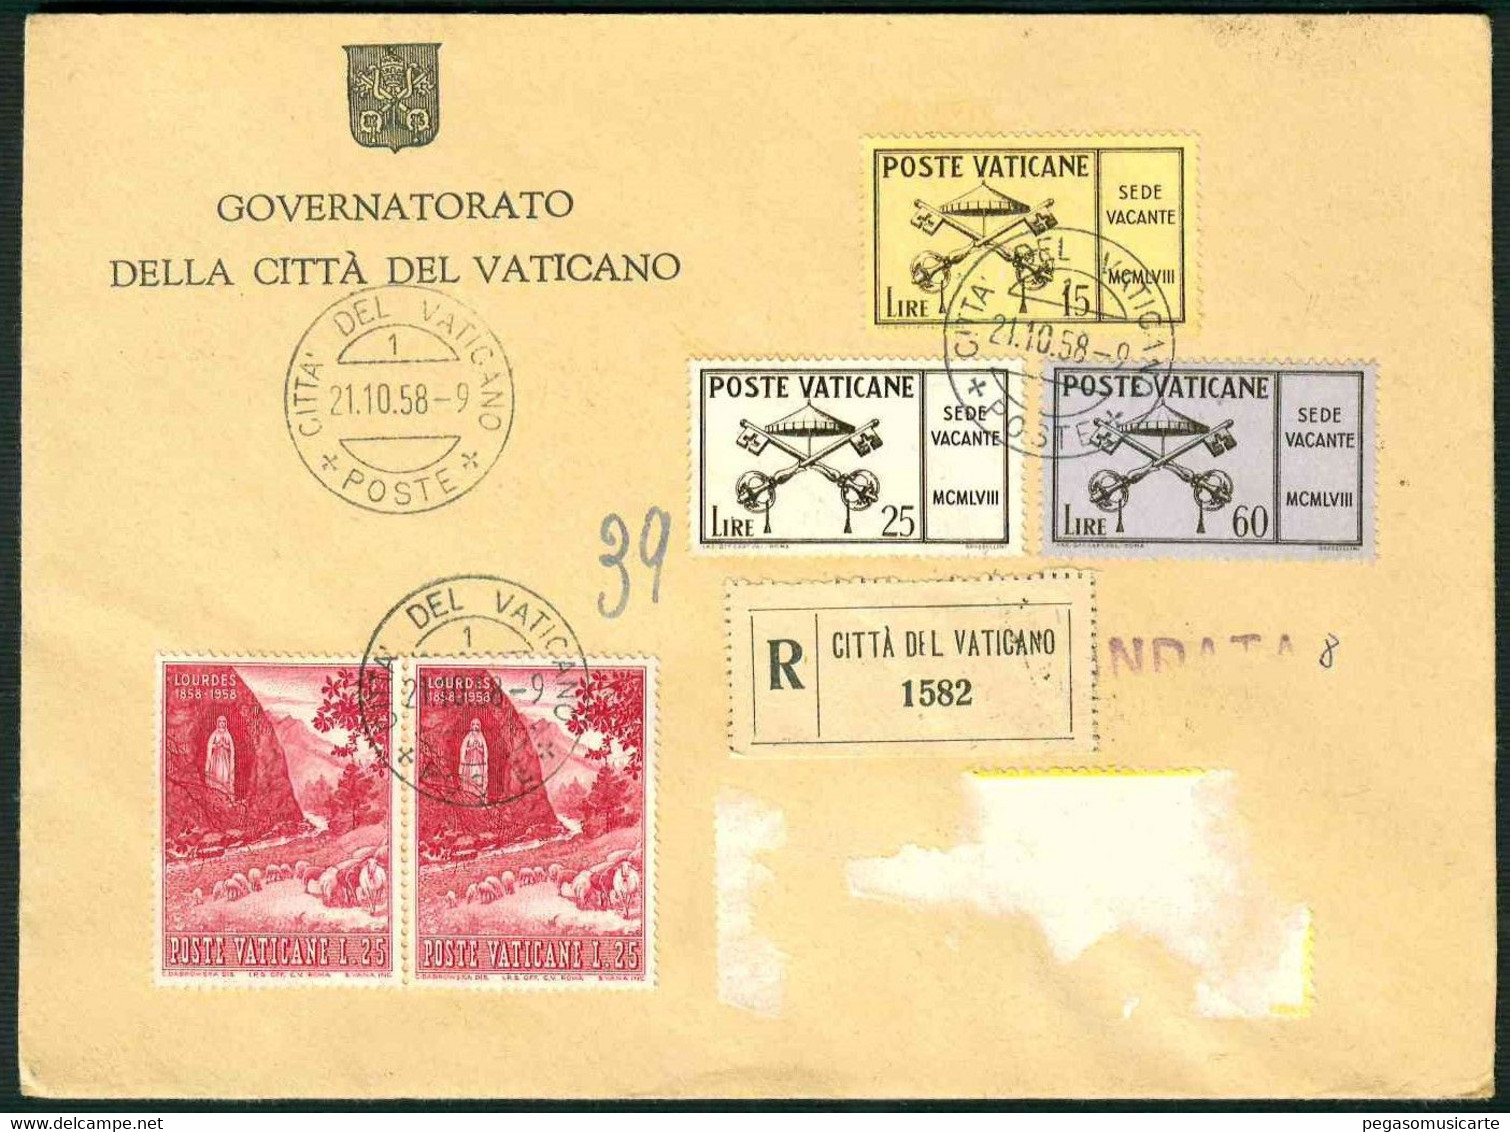 CLI 127 - STORIA POSTALE - GOVERNATORATO CITTA' DEL VATICANO RACCOMANDATA 1958 SEDE VACANTE - Covers & Documents